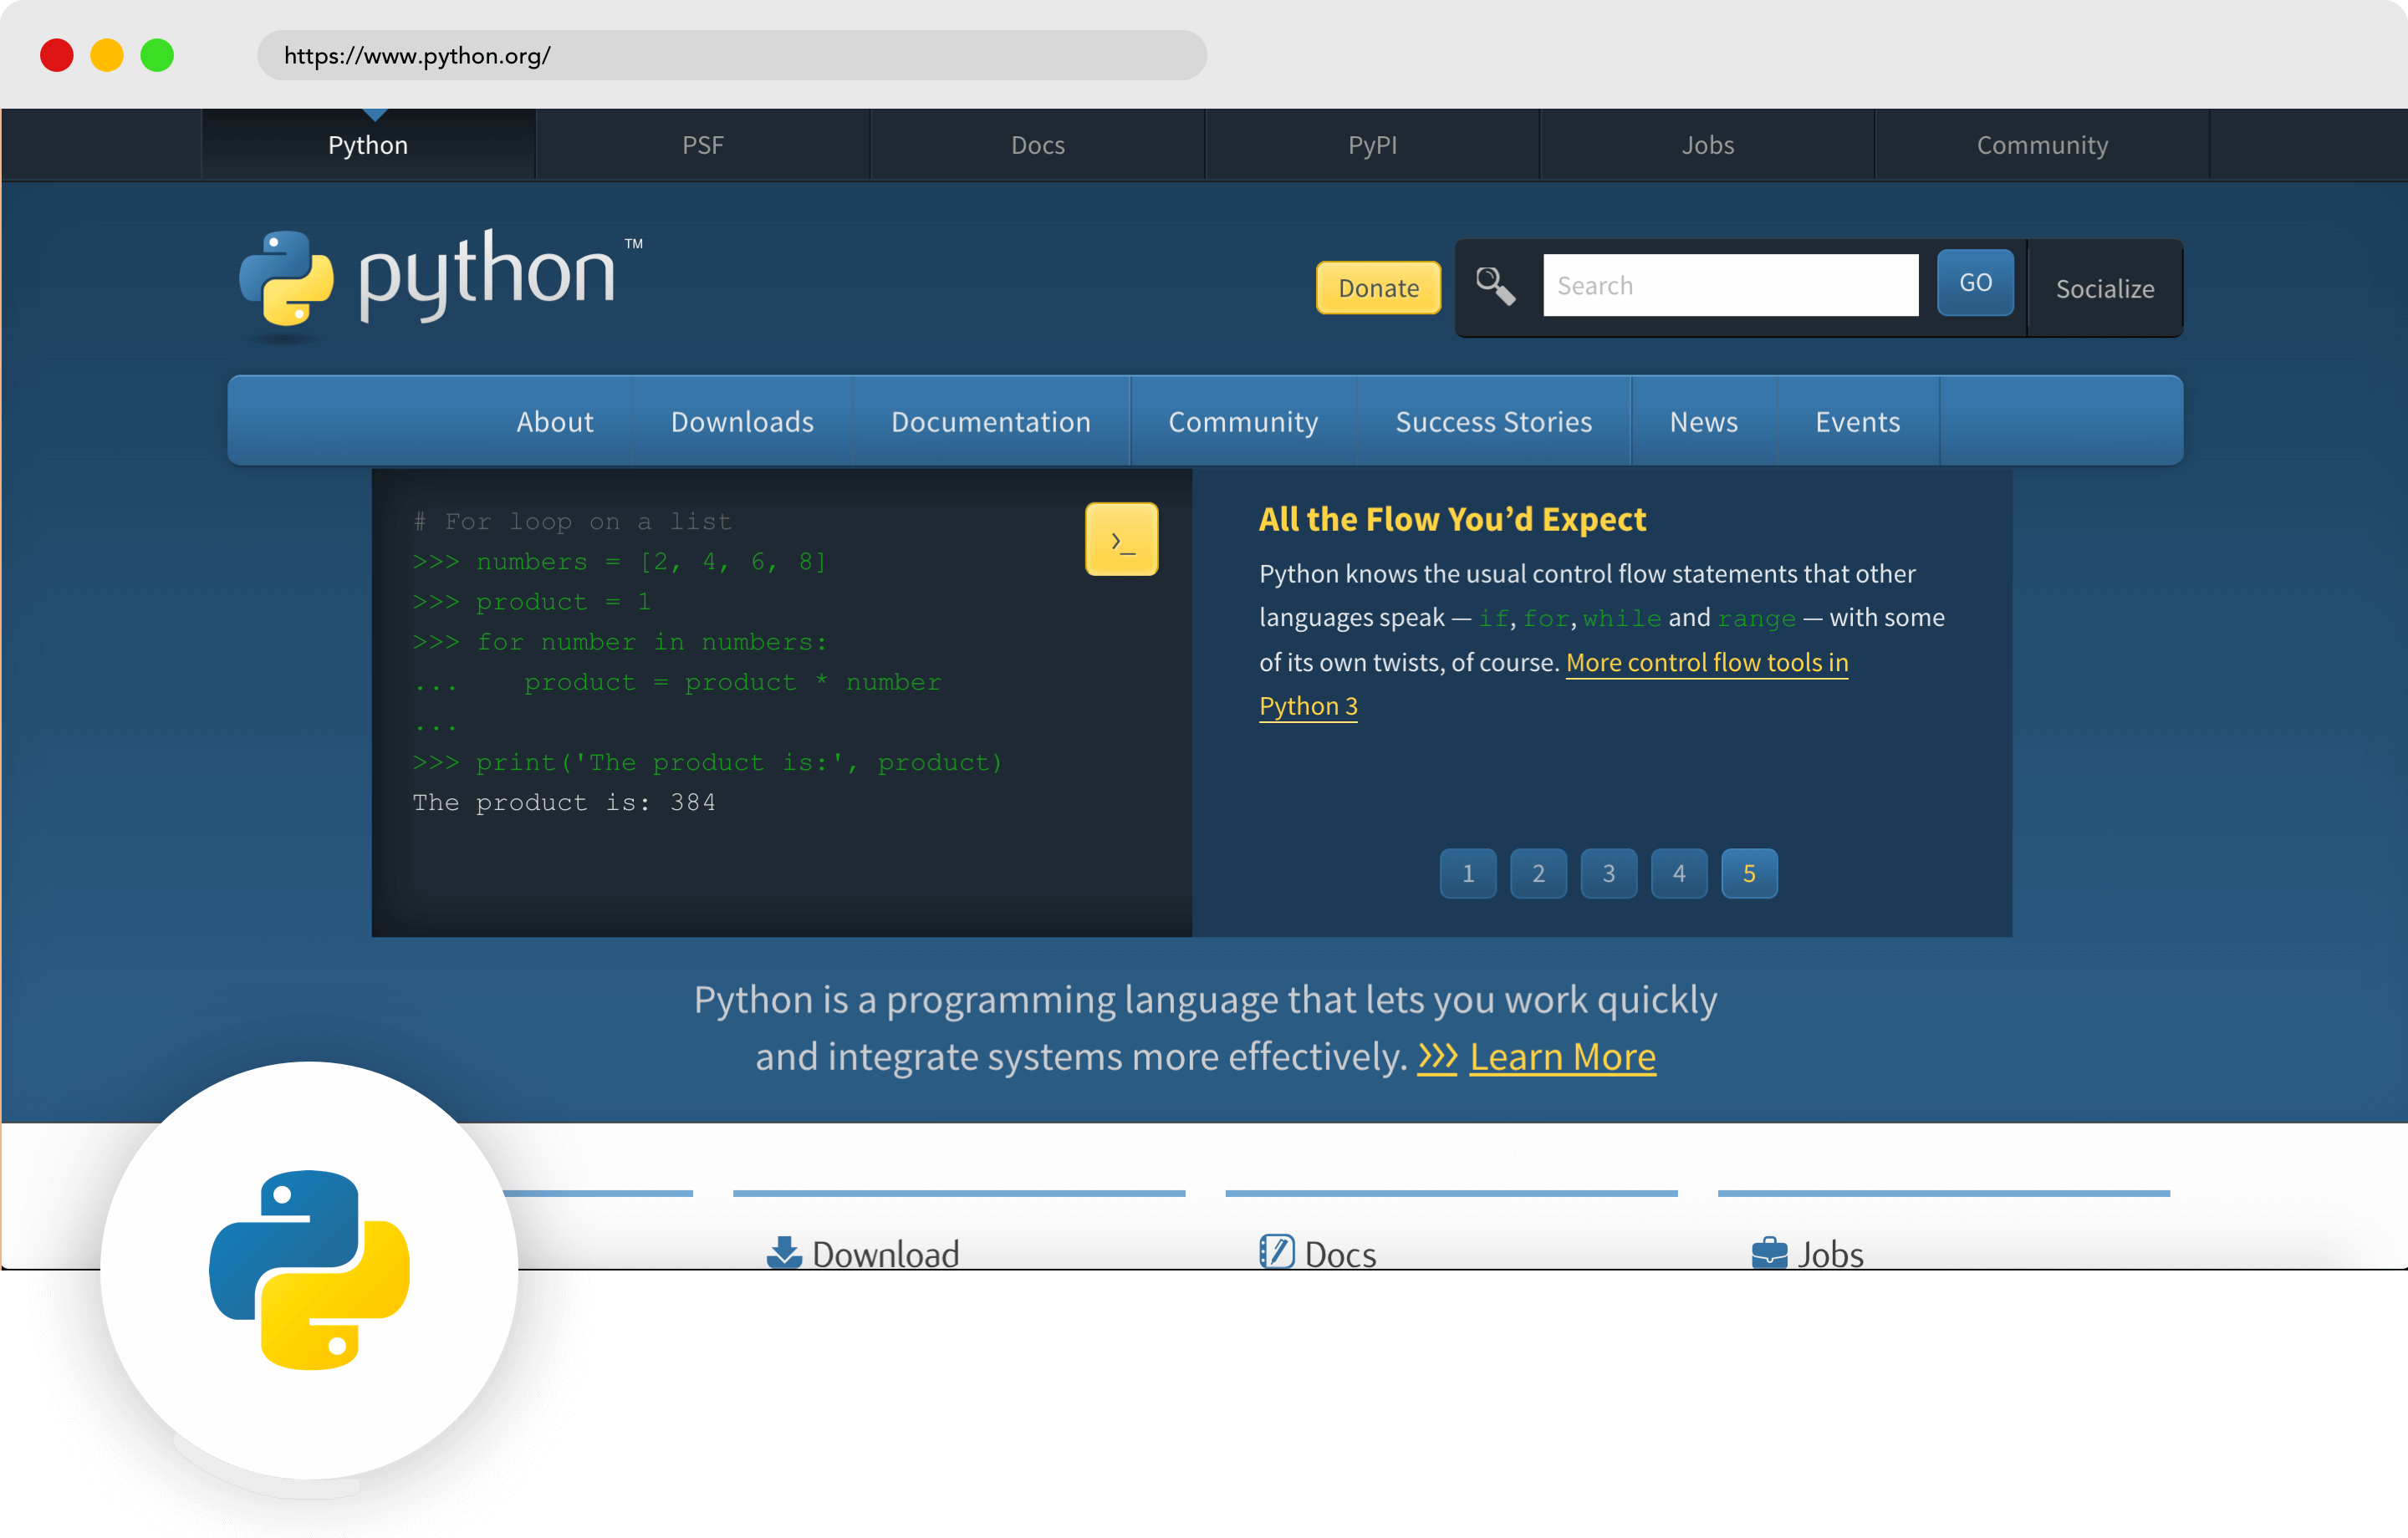 Как установить python на компьютер и начать на нём писать - журнал «код» программирование без снобизма